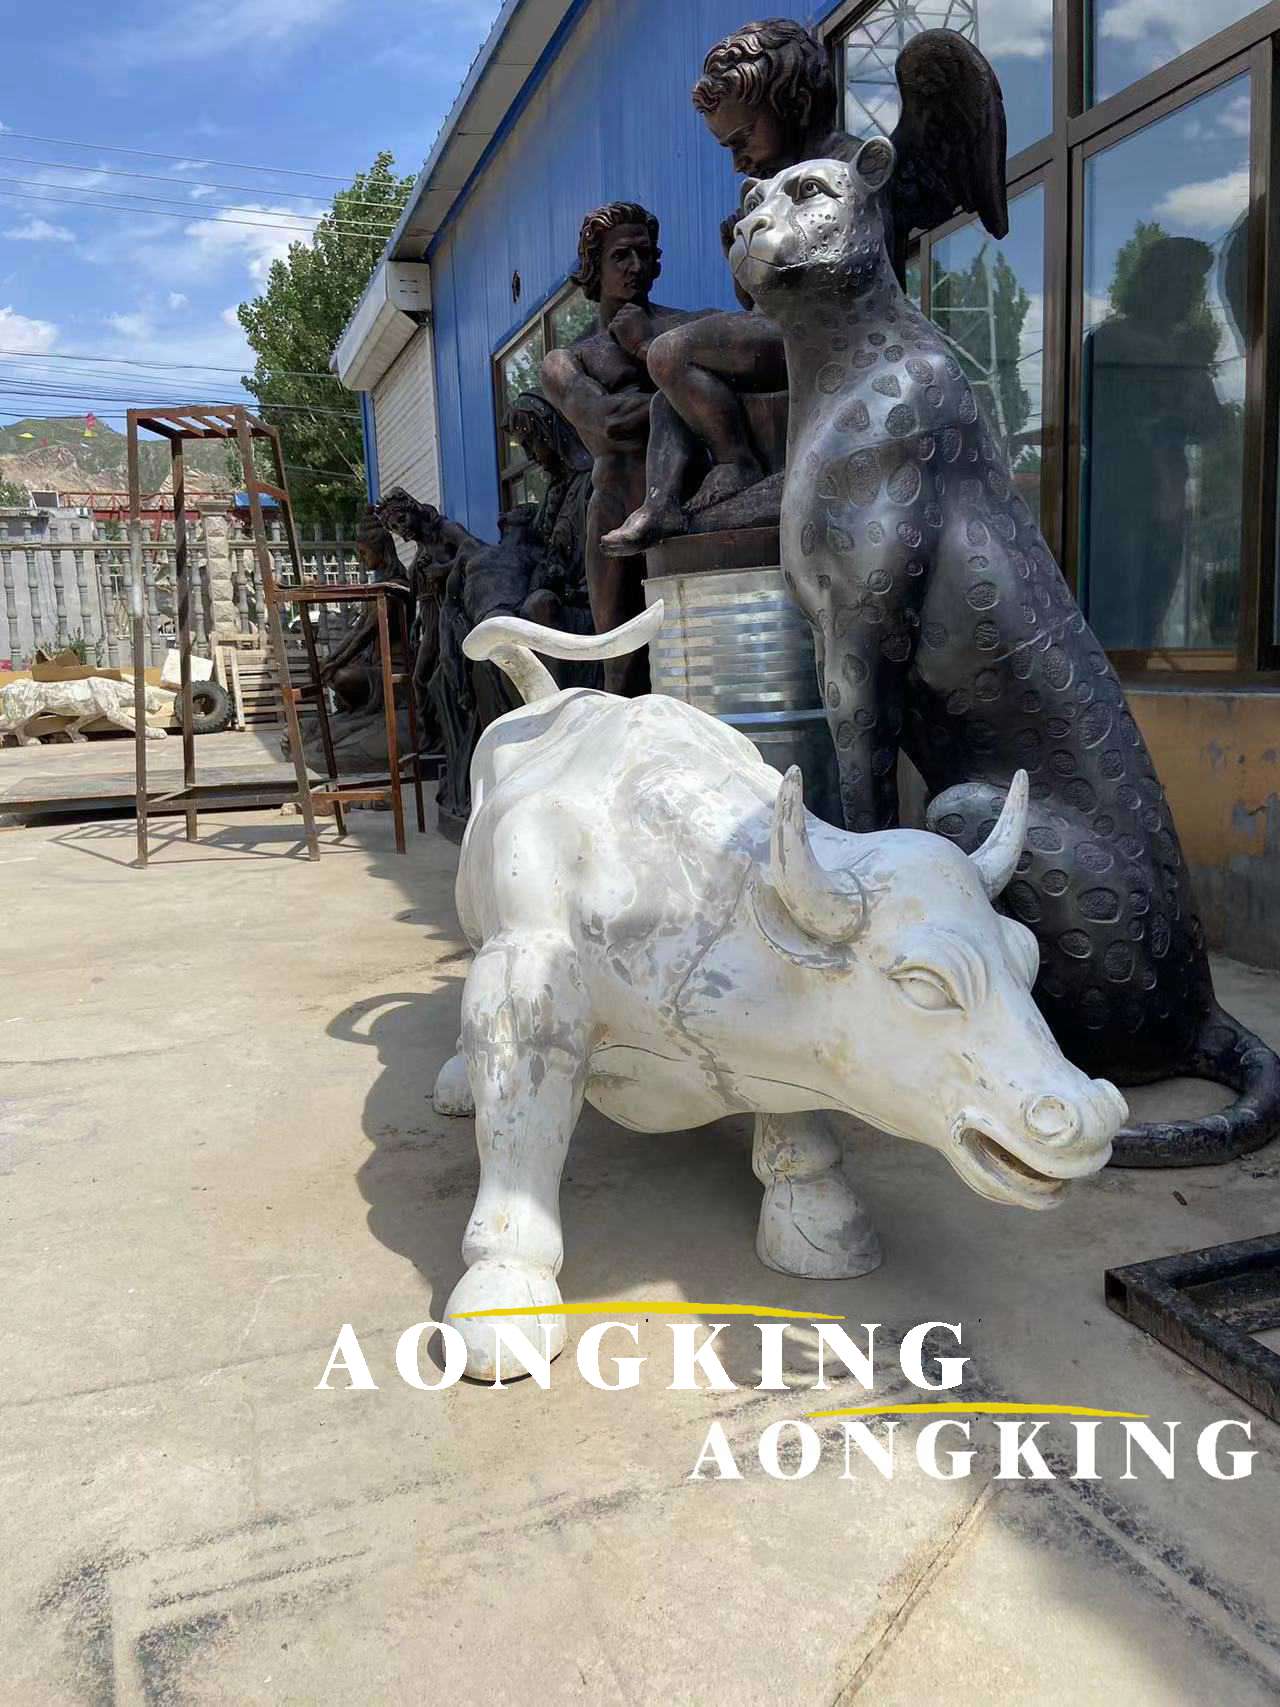 Charging Bull resin sculpture